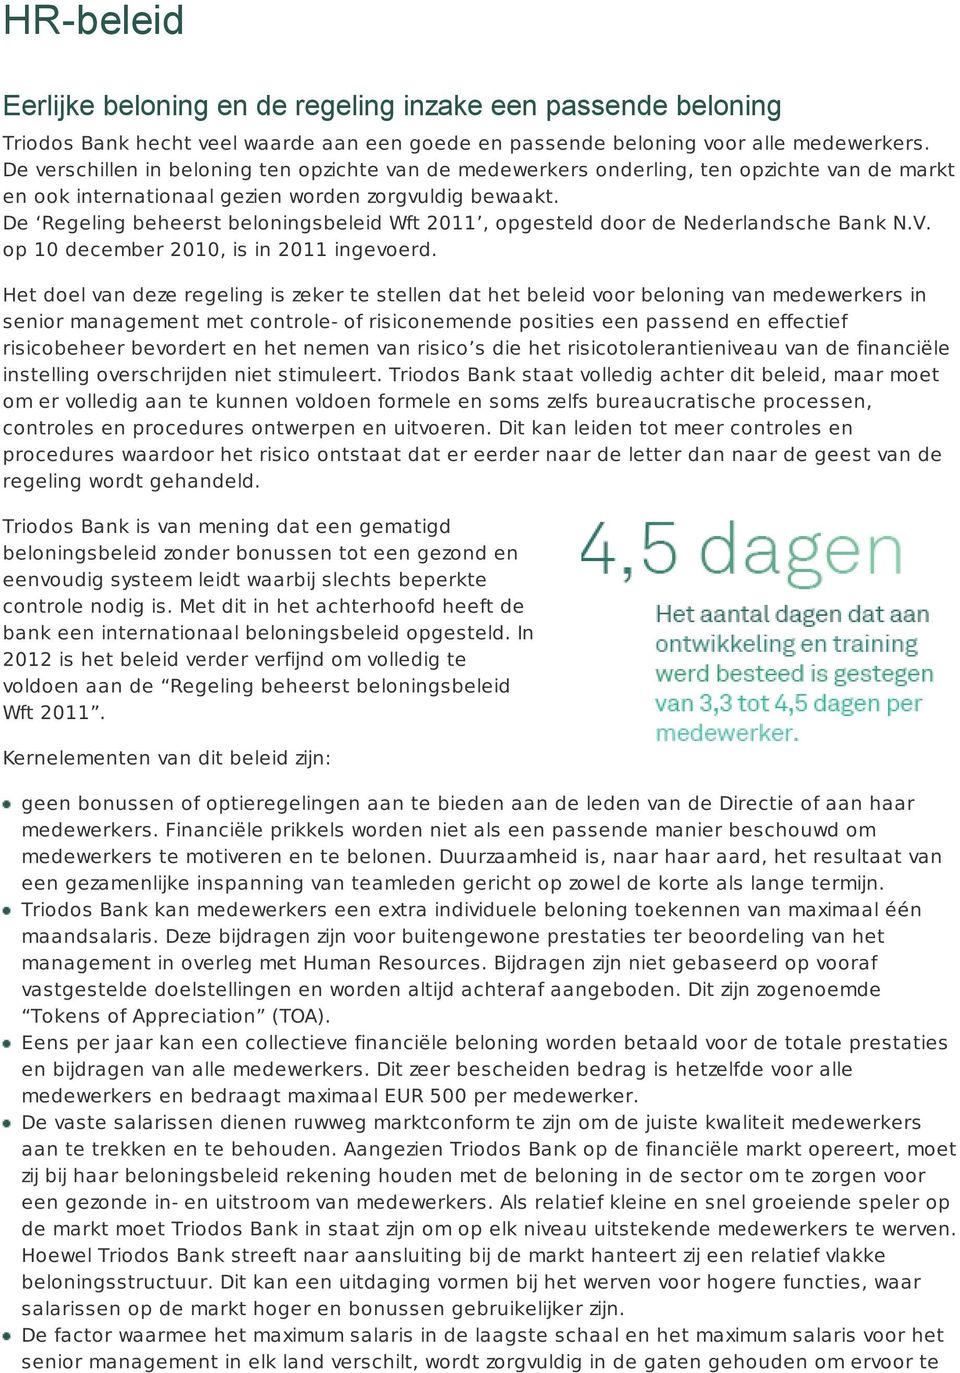 De Regeling beheerst beloningsbeleid Wft 2011, opgesteld door de Nederlandsche Bank N.V. op 10 december 2010, is in 2011 ingevoerd.